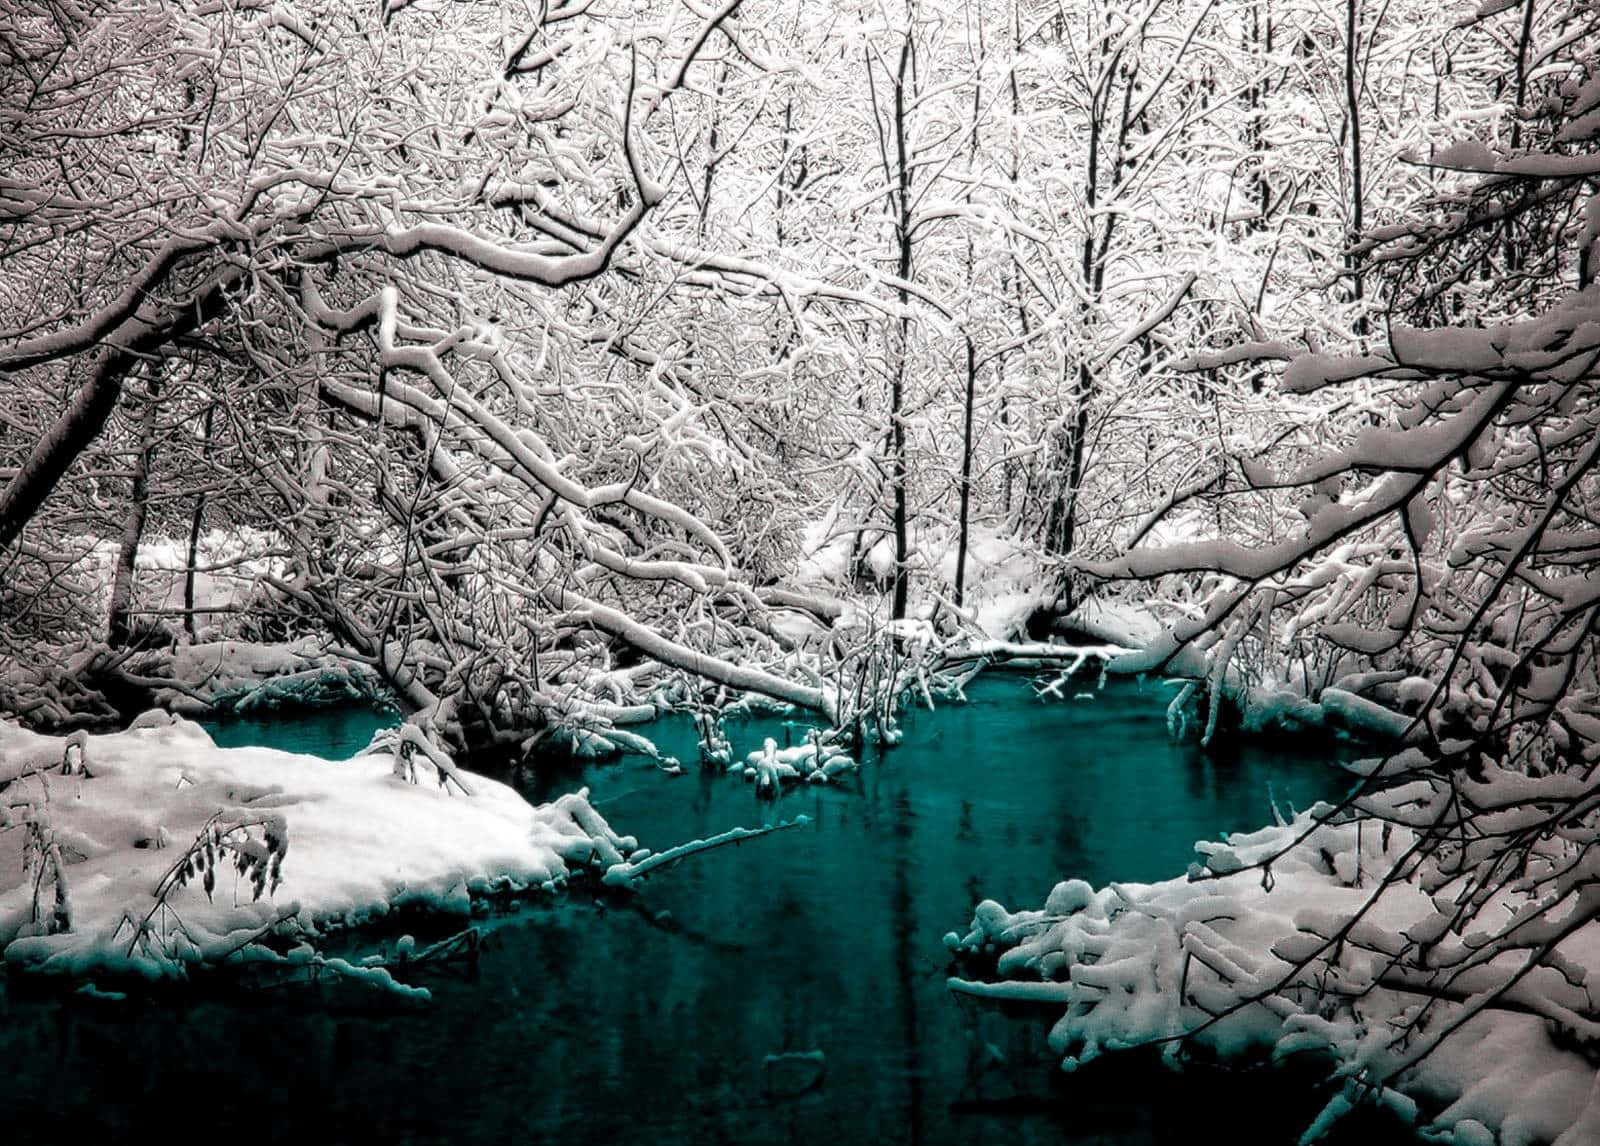 Imponentesárboles Invernales Cubiertos De Nieve. Fondo de pantalla